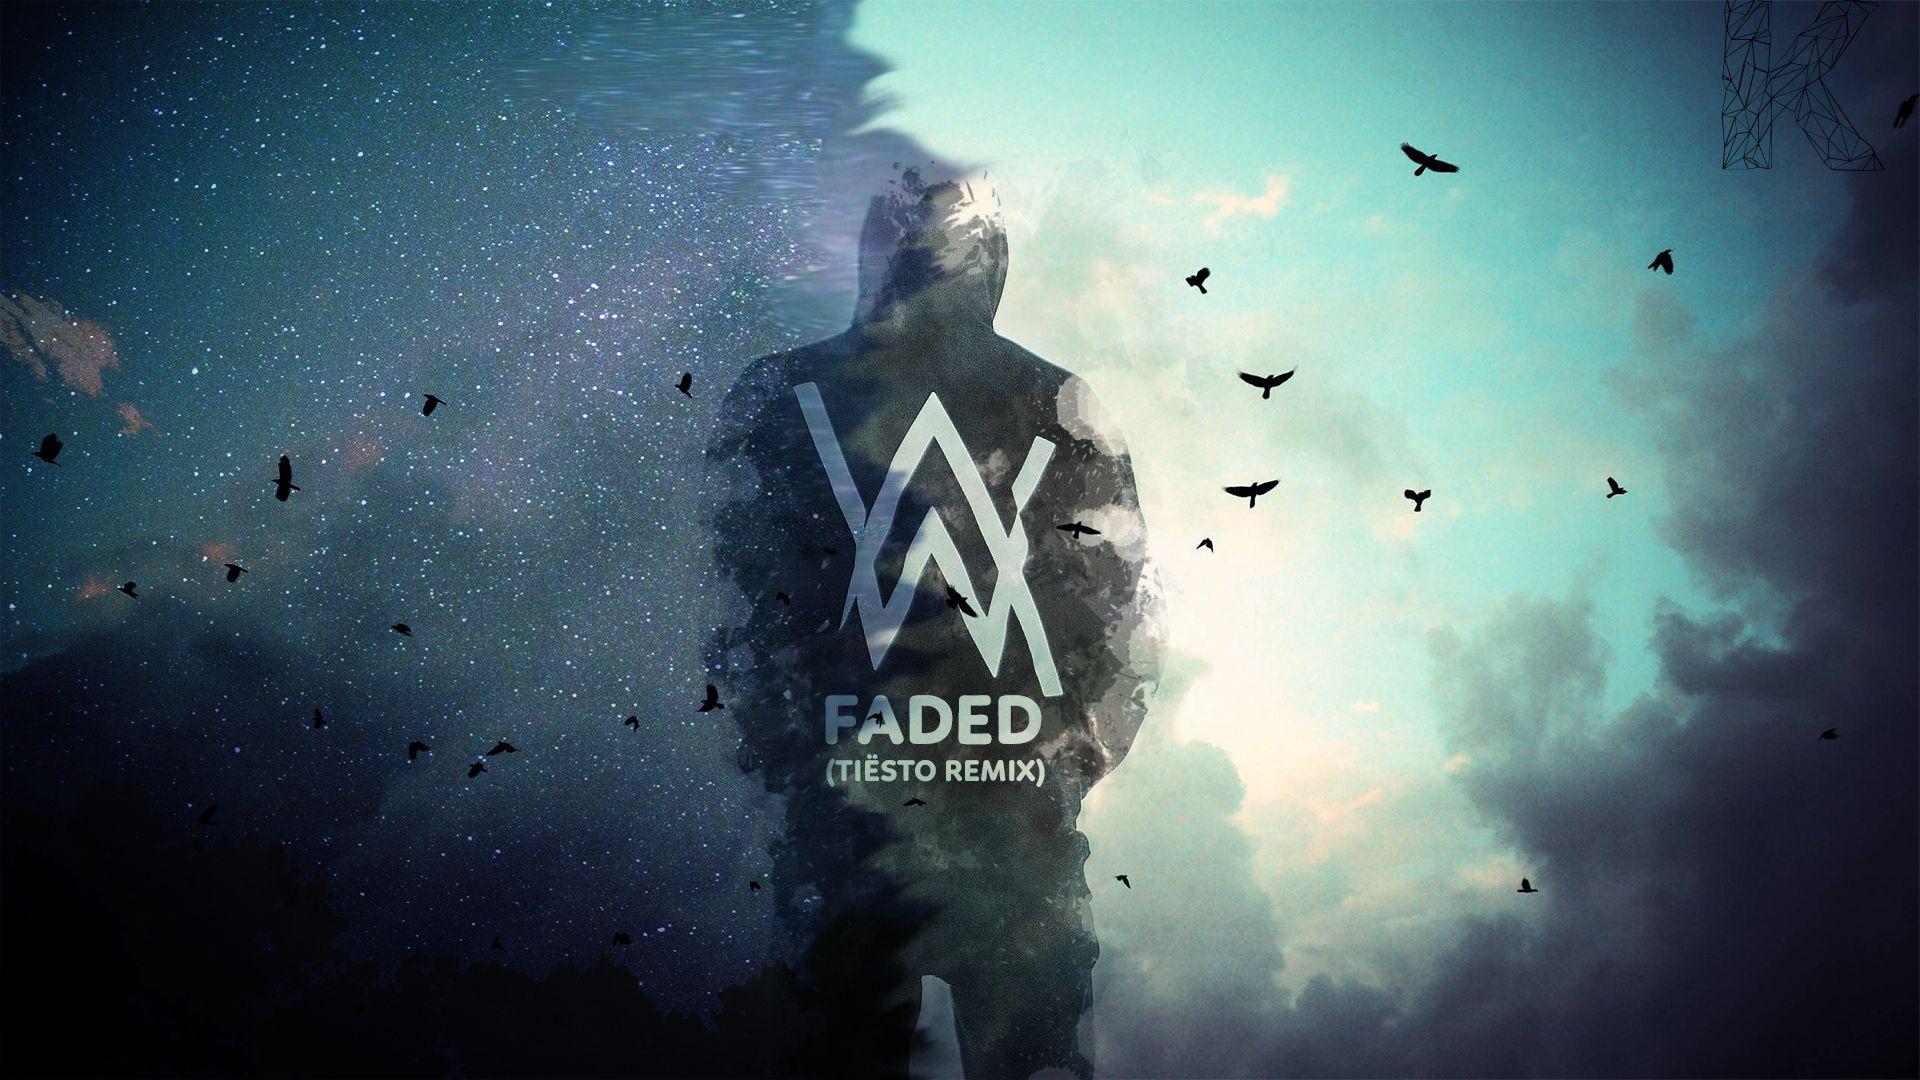 Faded Background Logo - Alan Walker. Alan